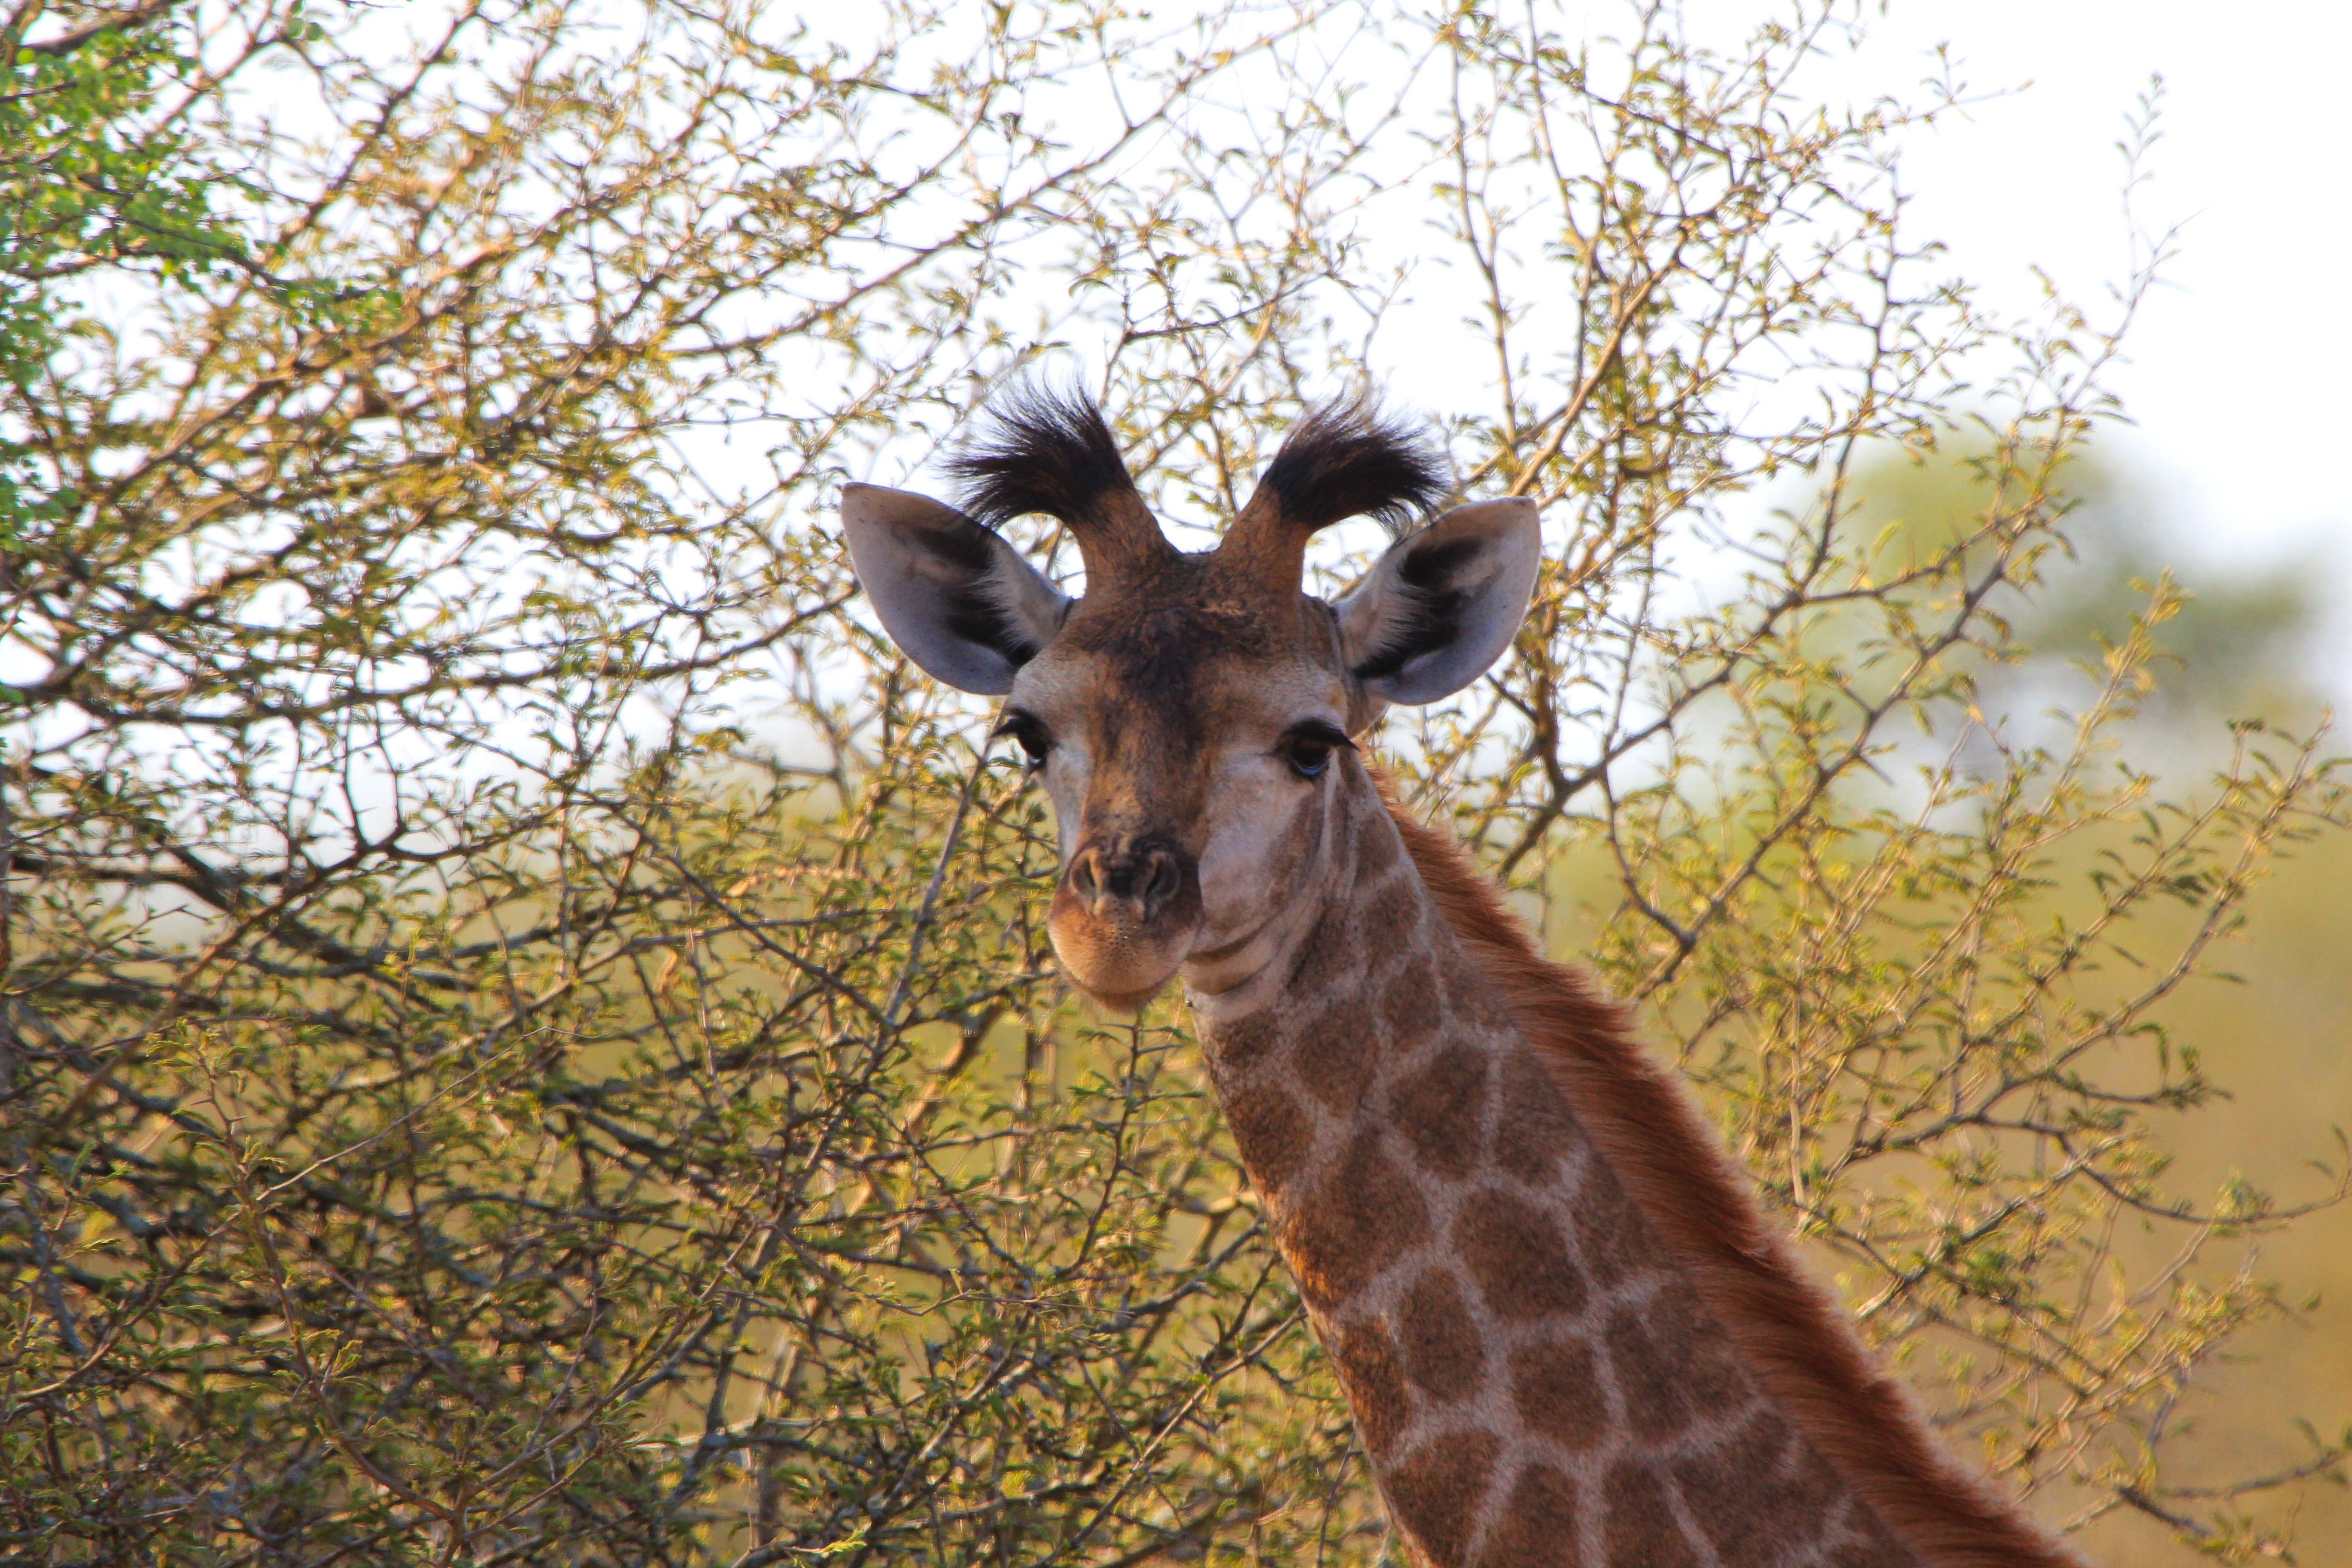 Popular Giraffe Image for Phone